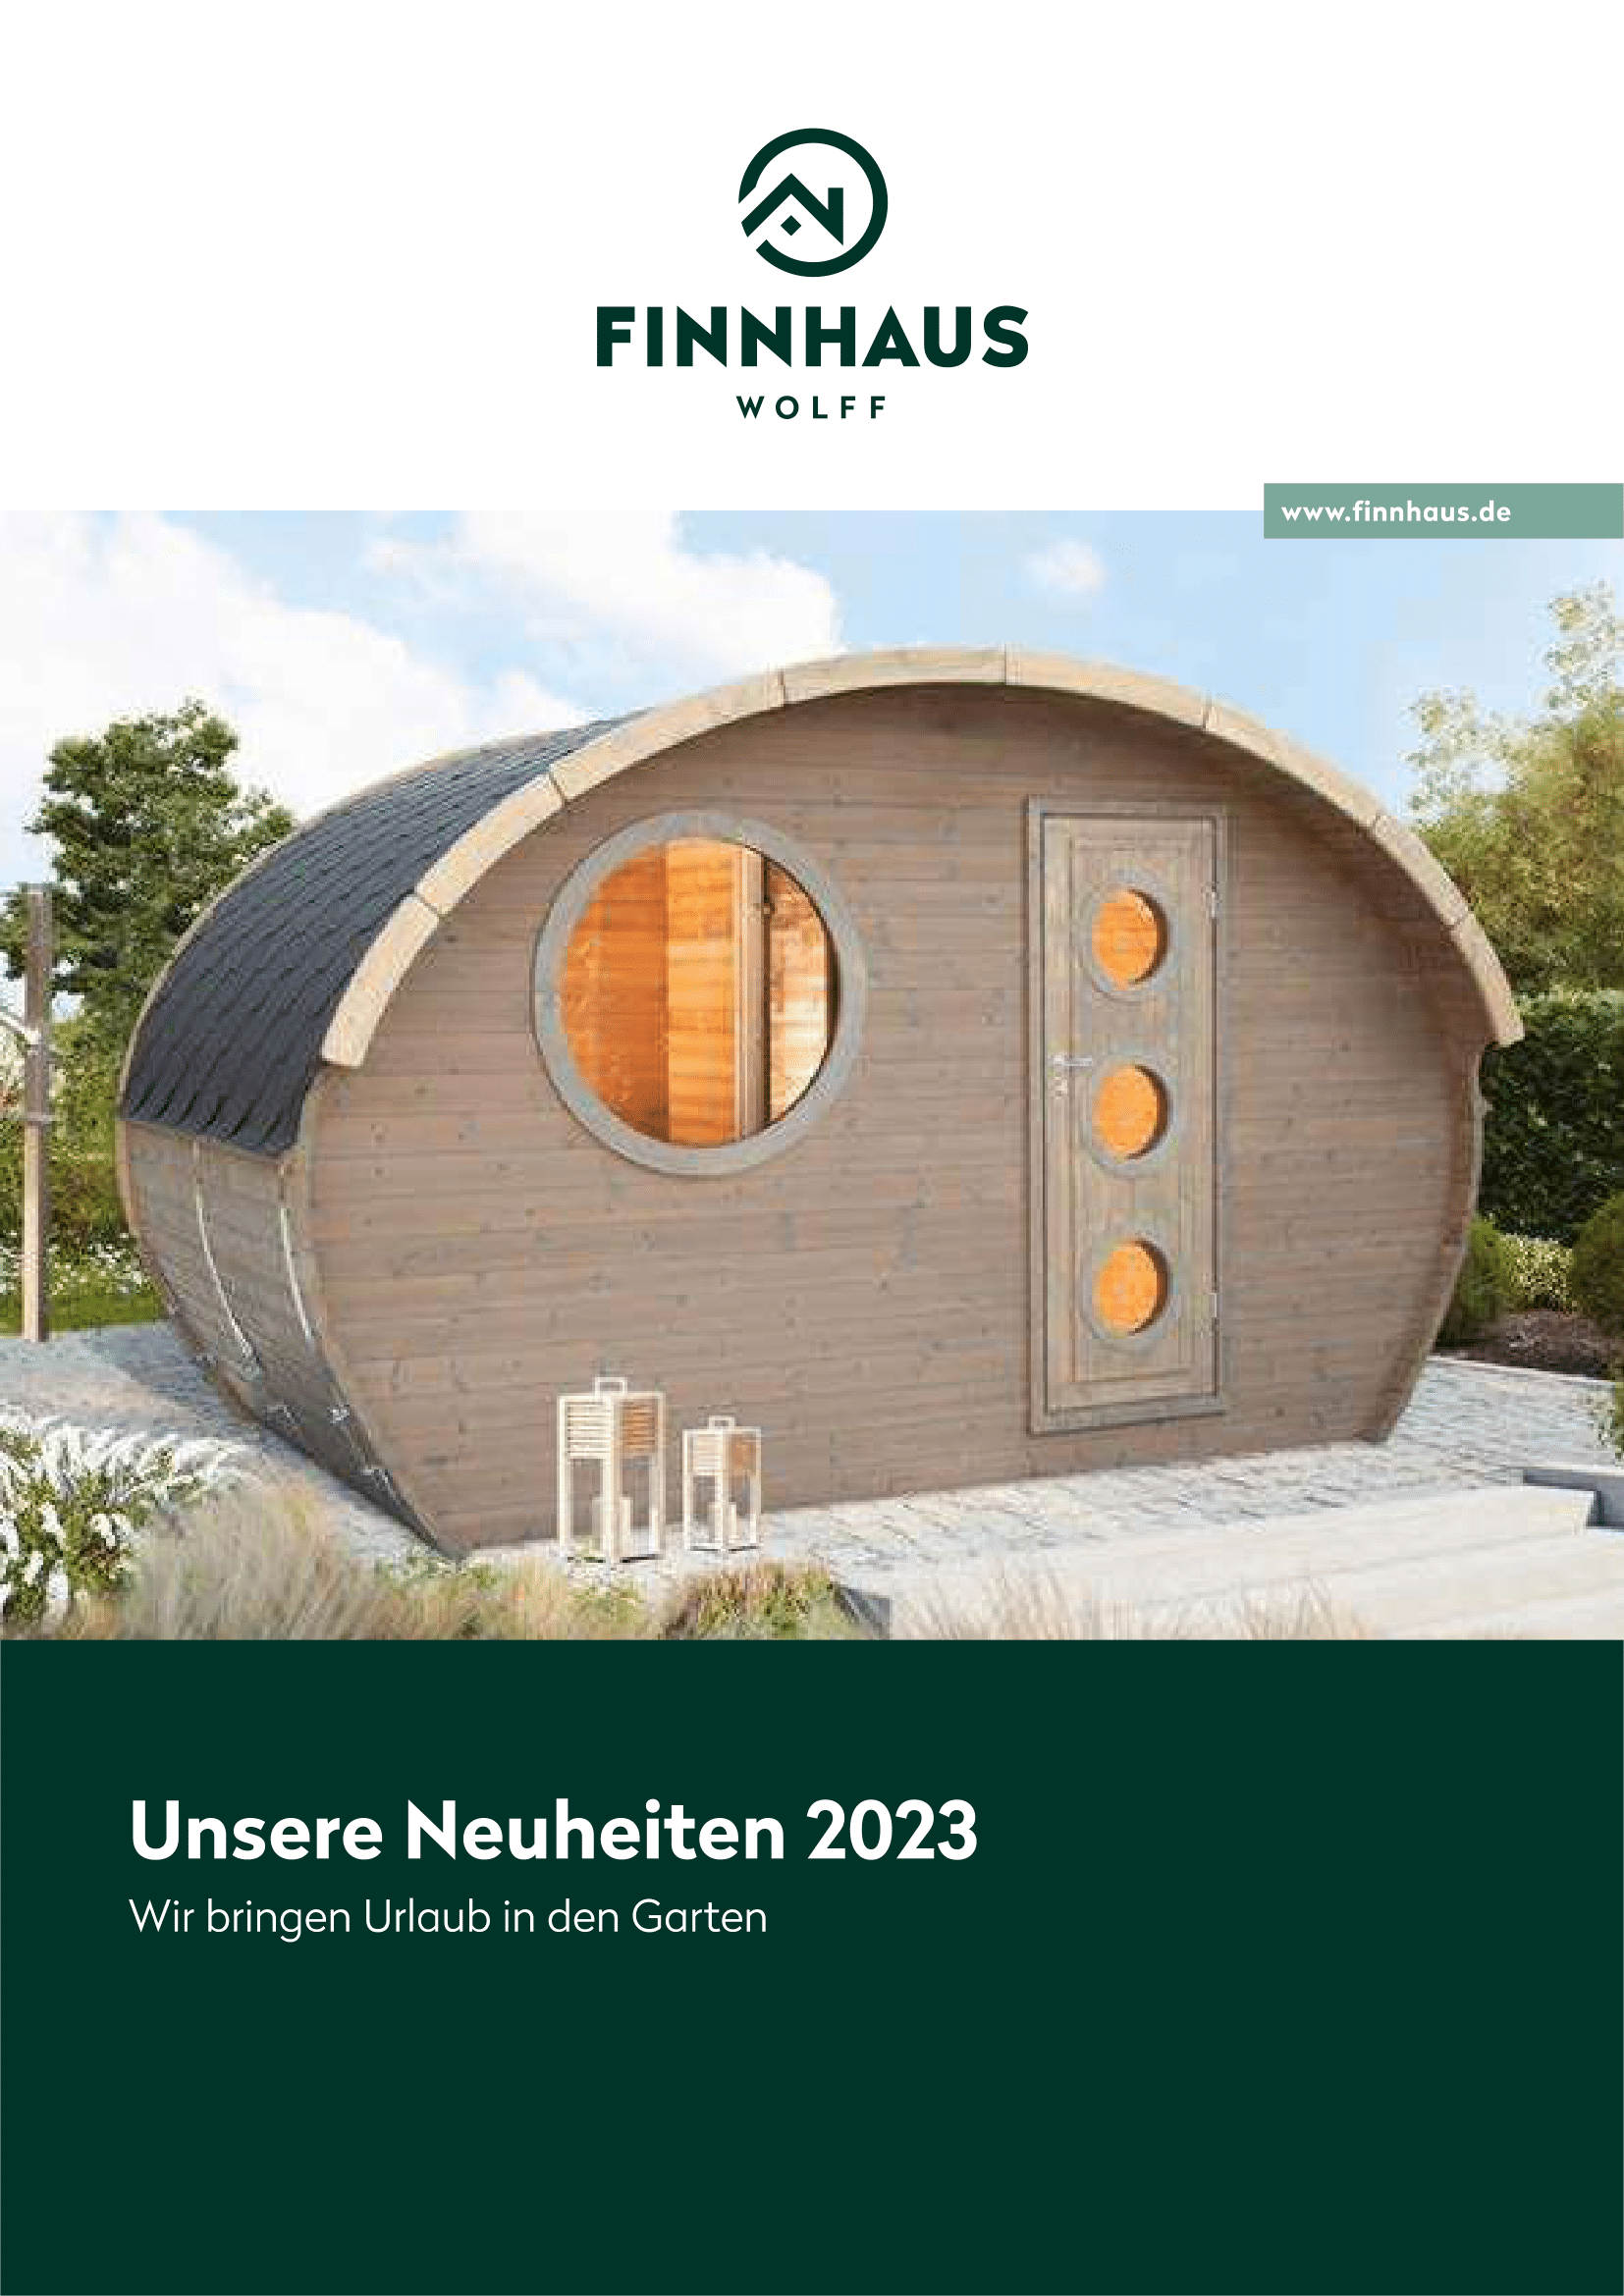 Finnhaus Wolff Neuheiten 2023